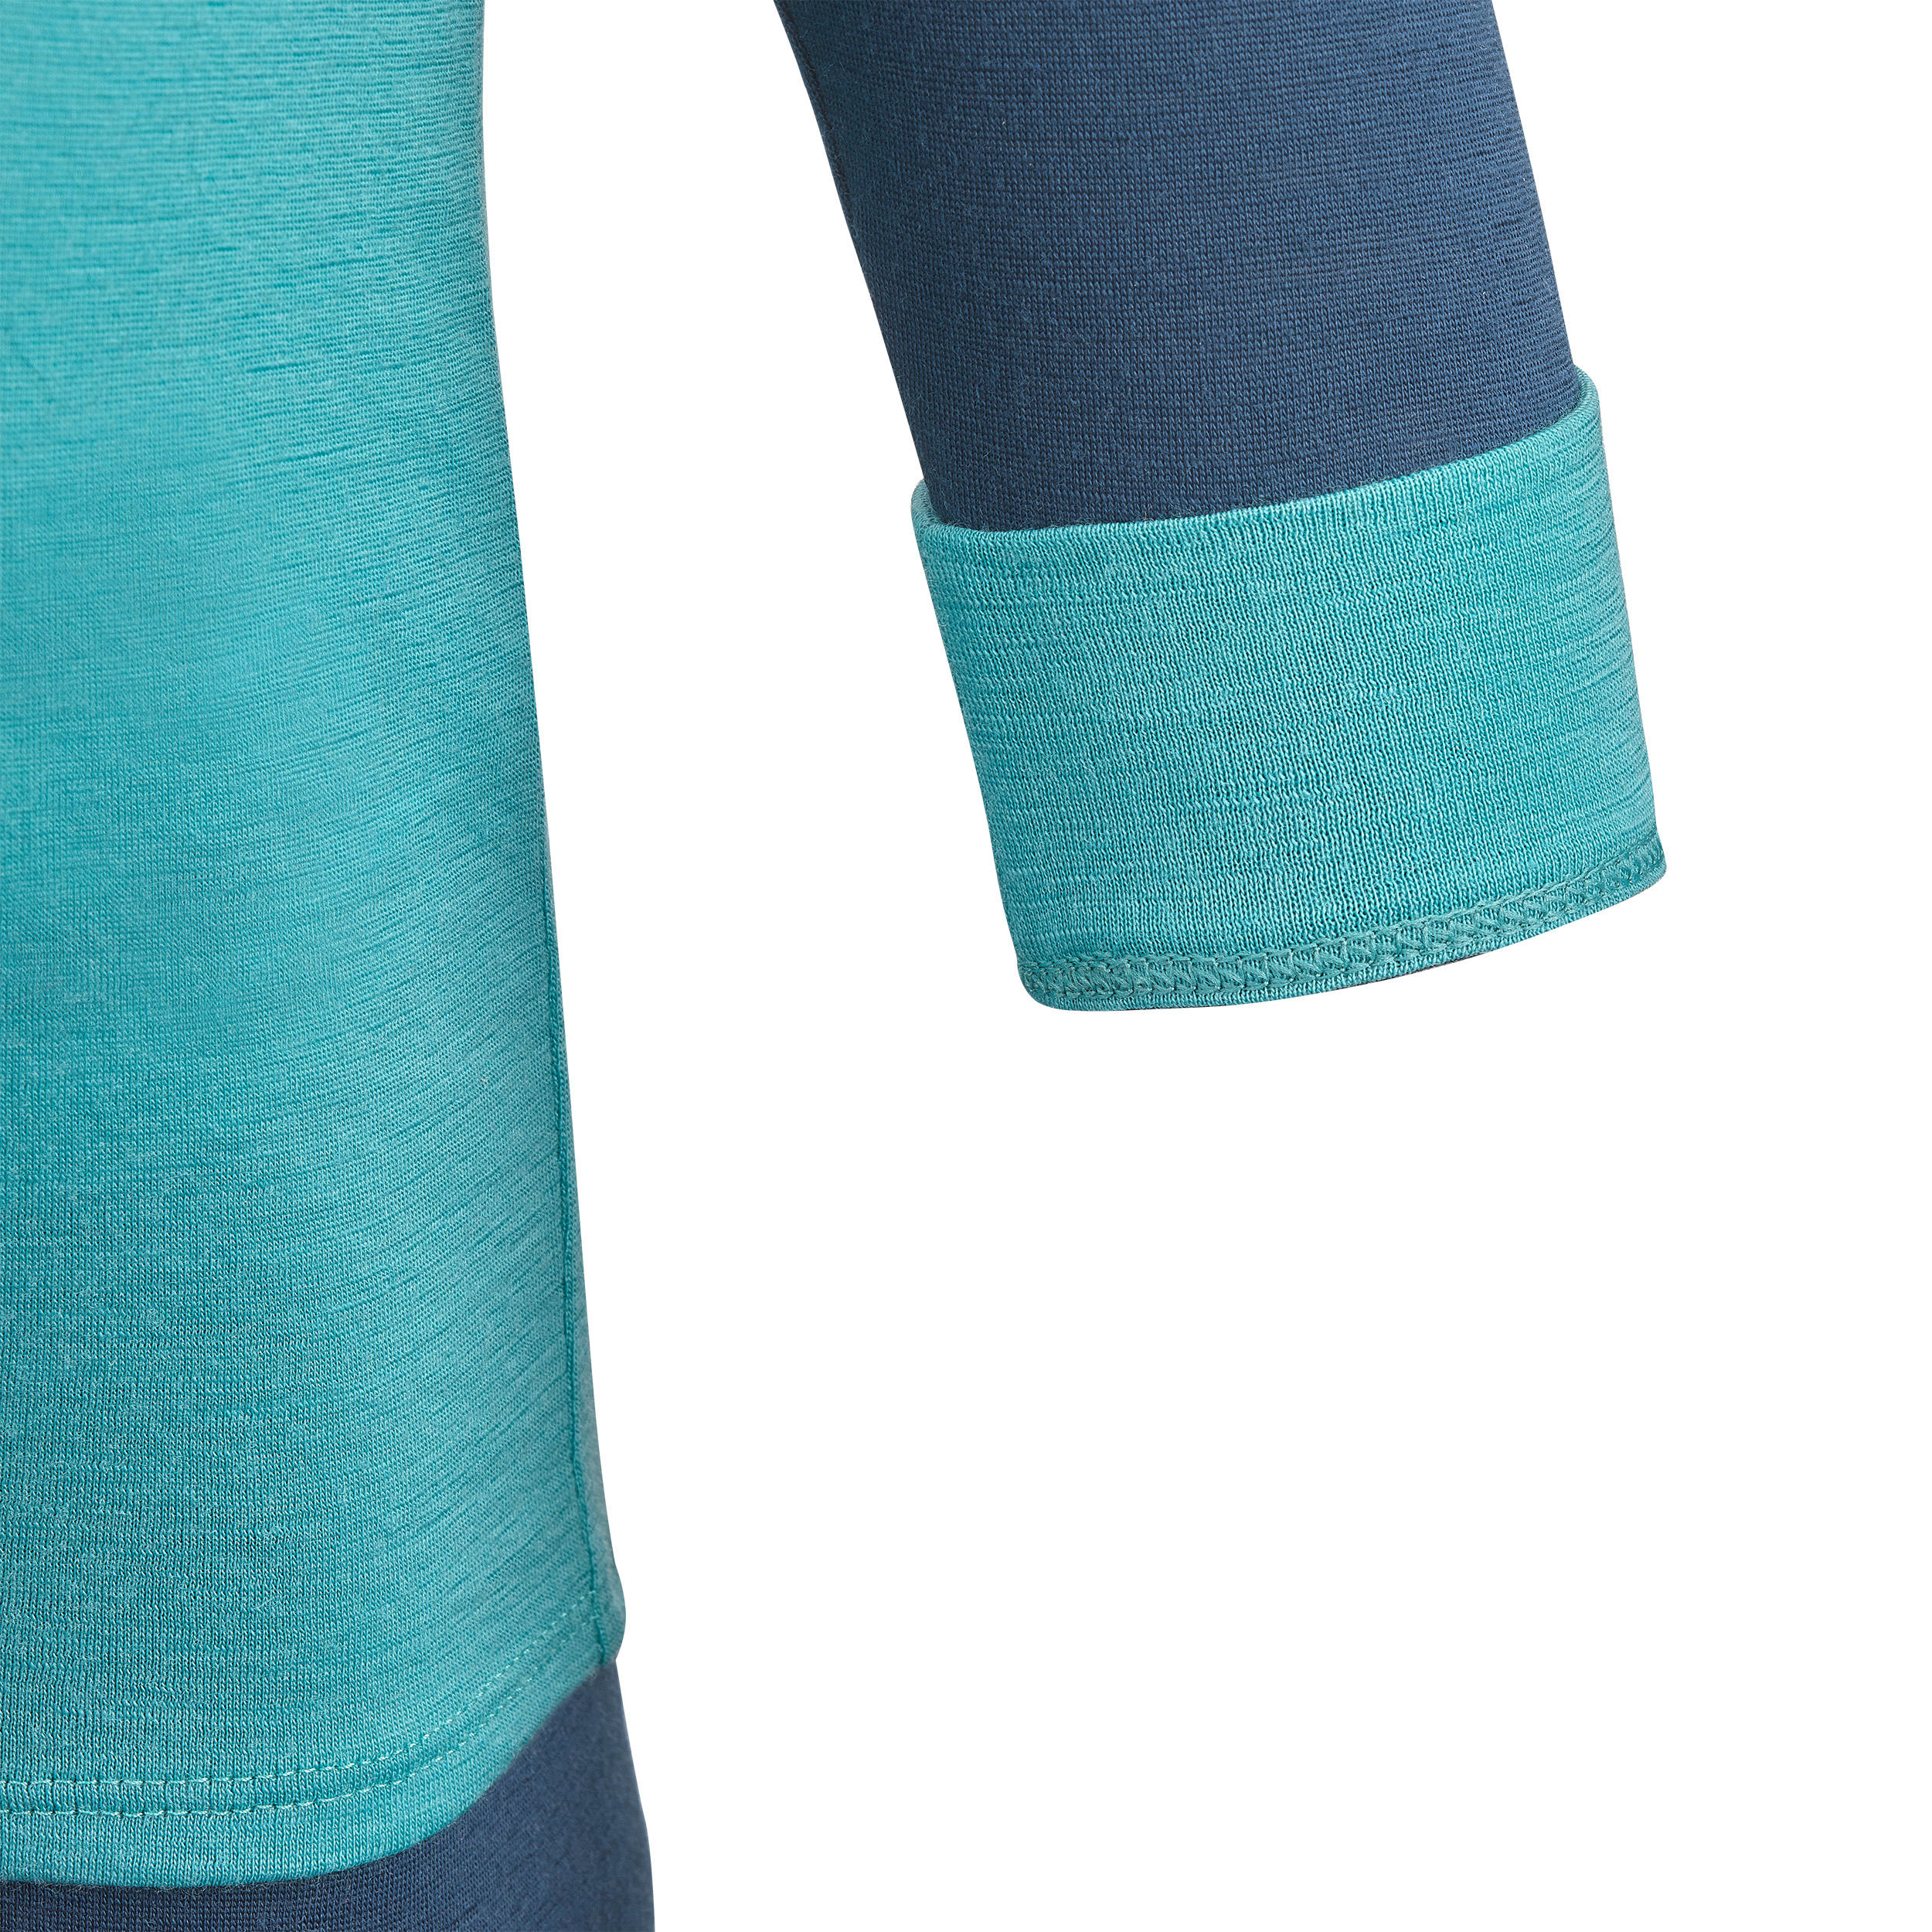 Baby ski base layer top, undershirt merino wool MERIWARM turquoise 5/12